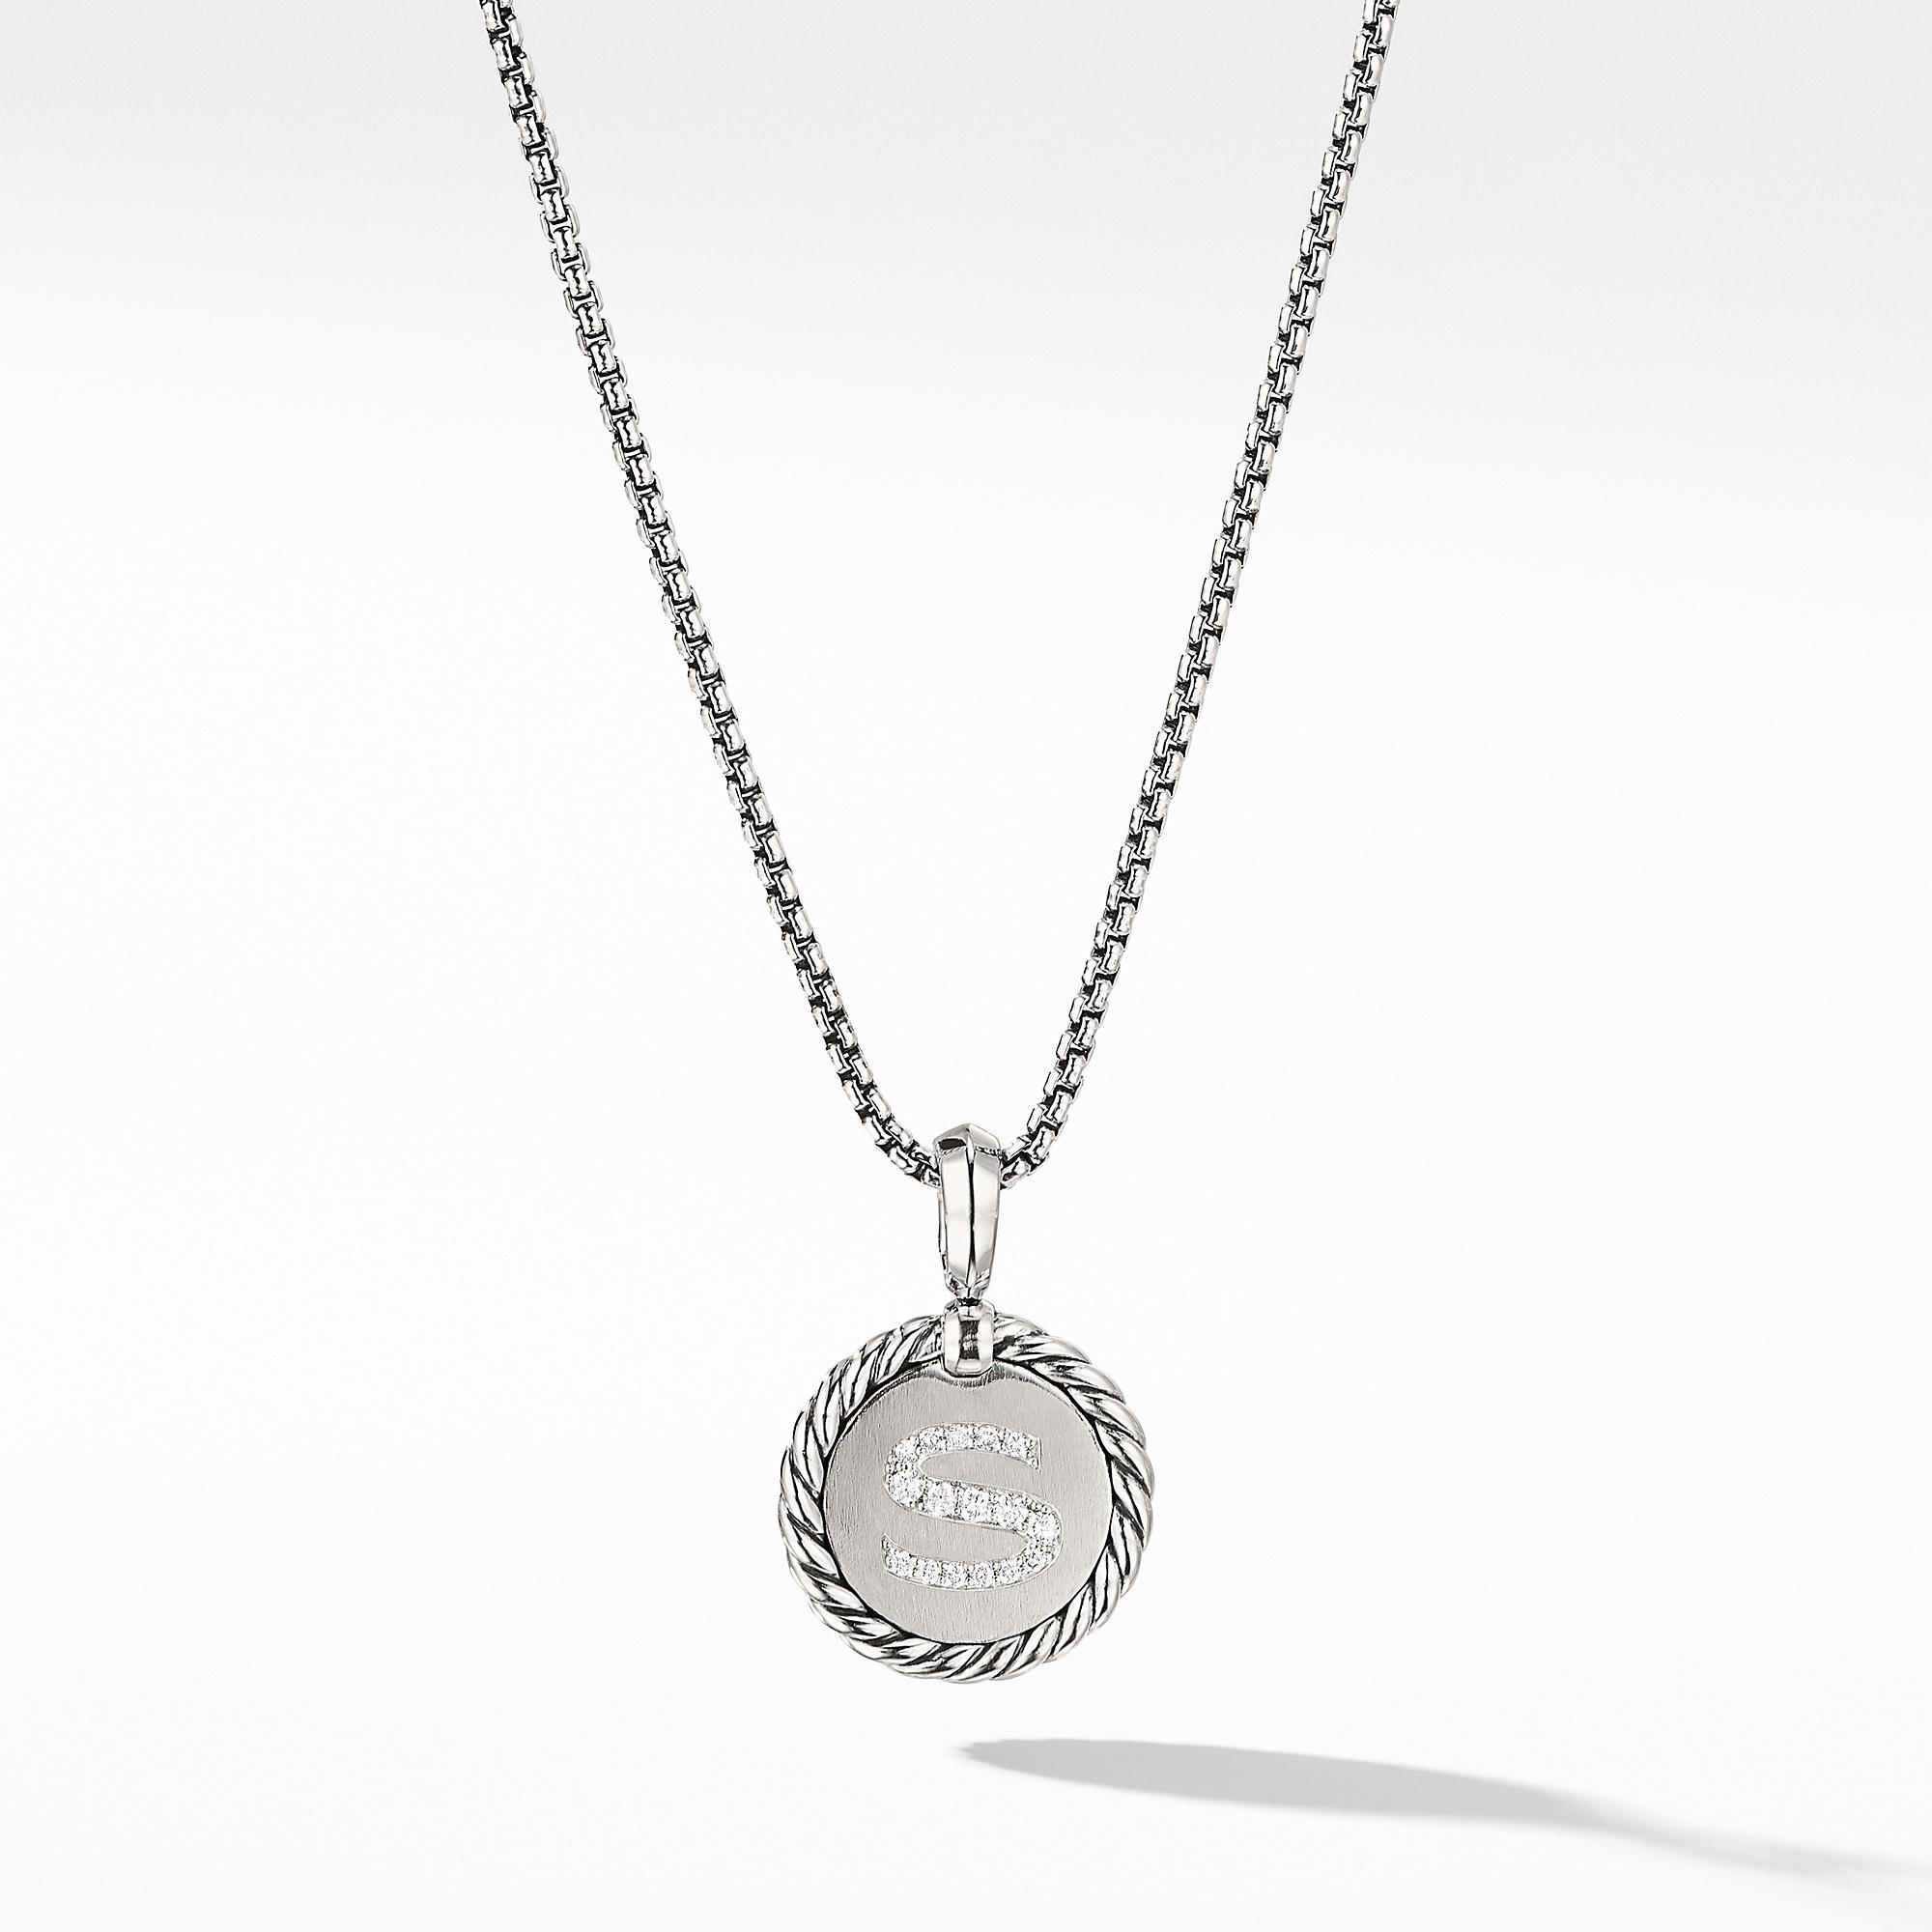 David Yurman S initial Charm Necklace with Diamonds